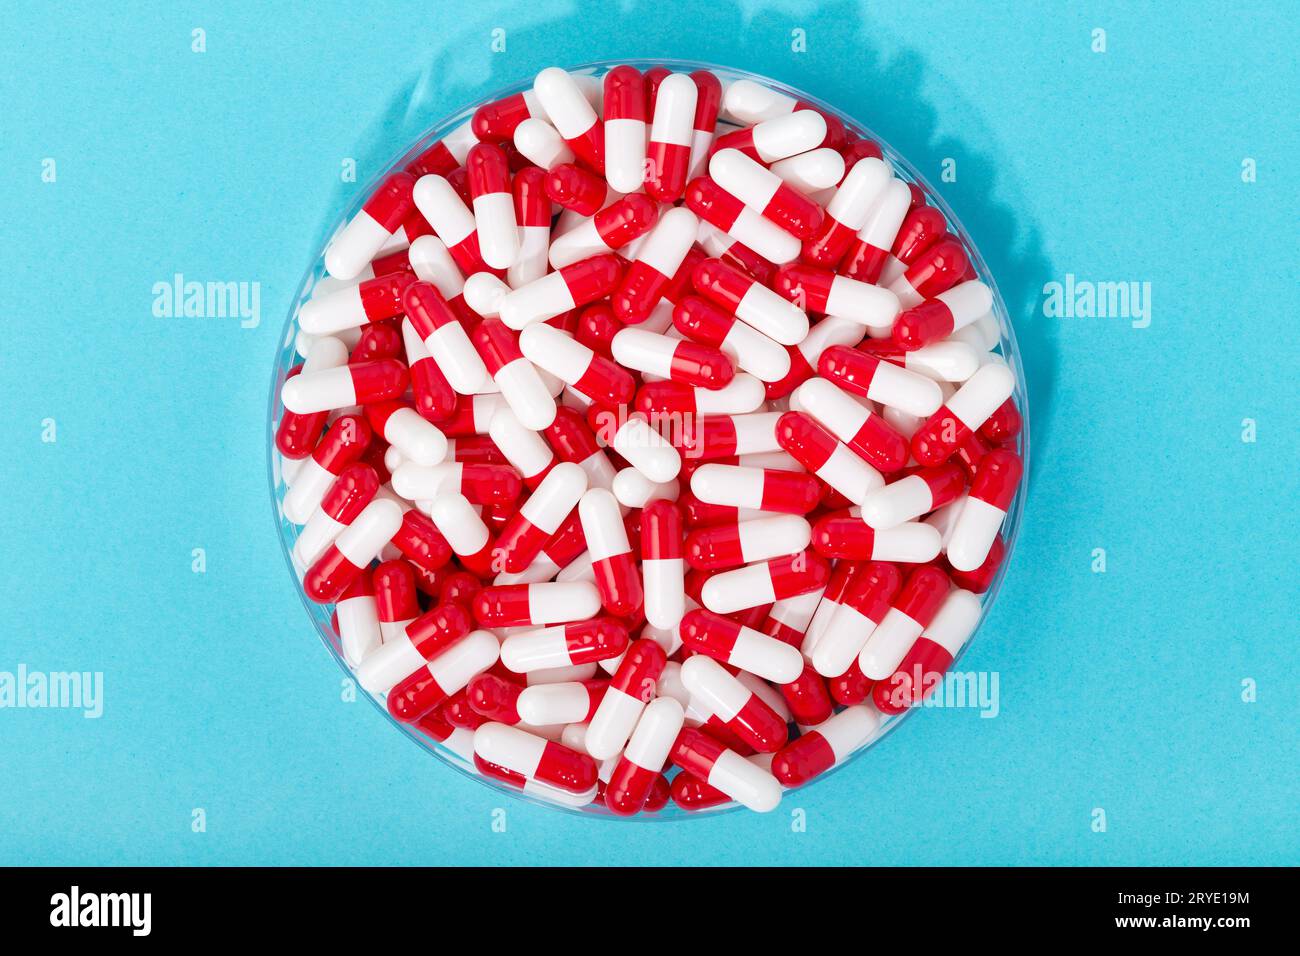 Gruppo di capsule pillole in contenitore rotondo su sfondo blu Foto Stock